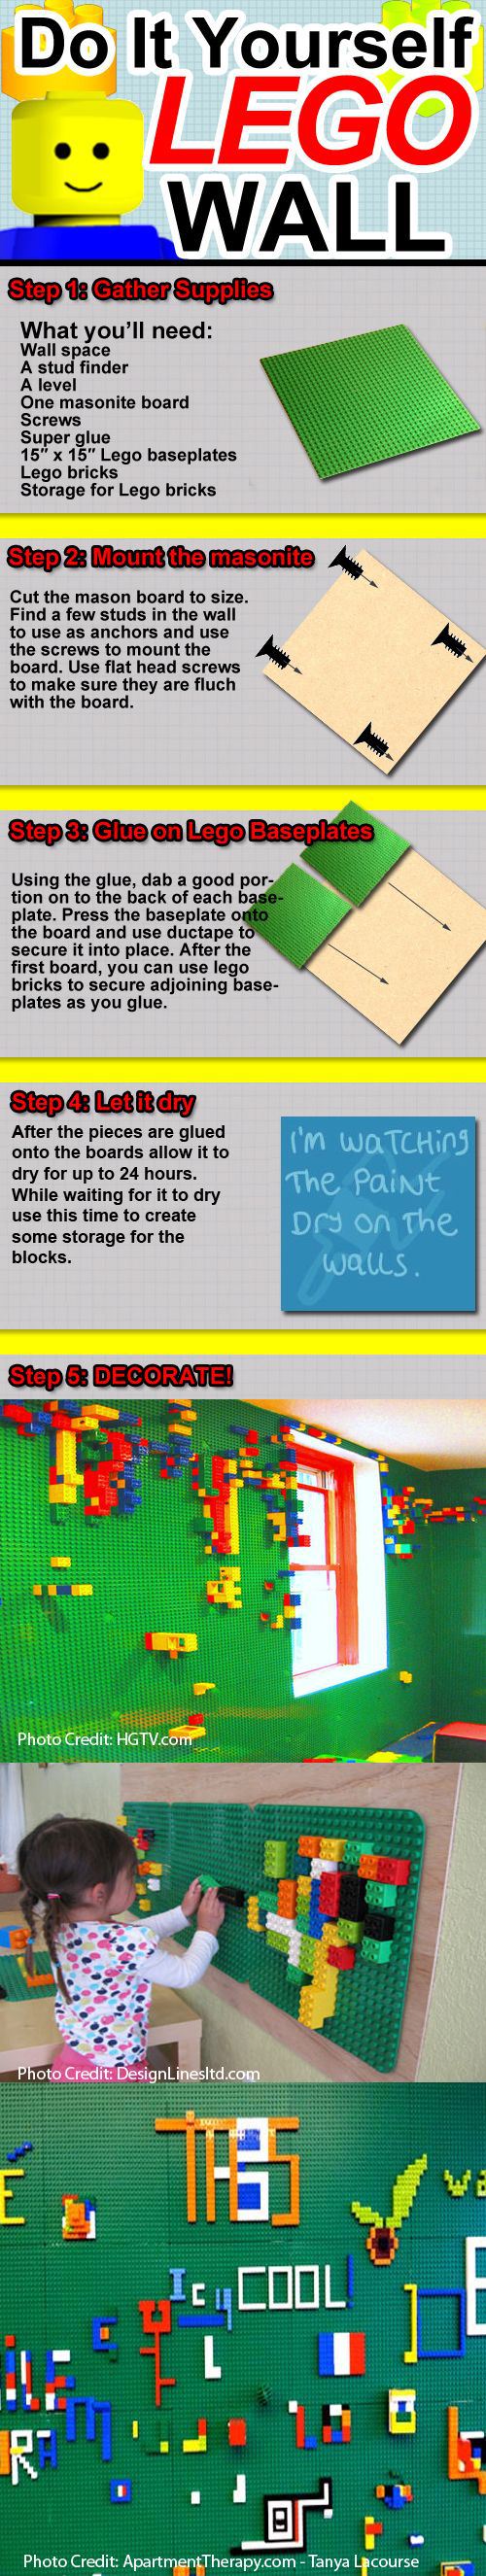 DIY Lego Wall